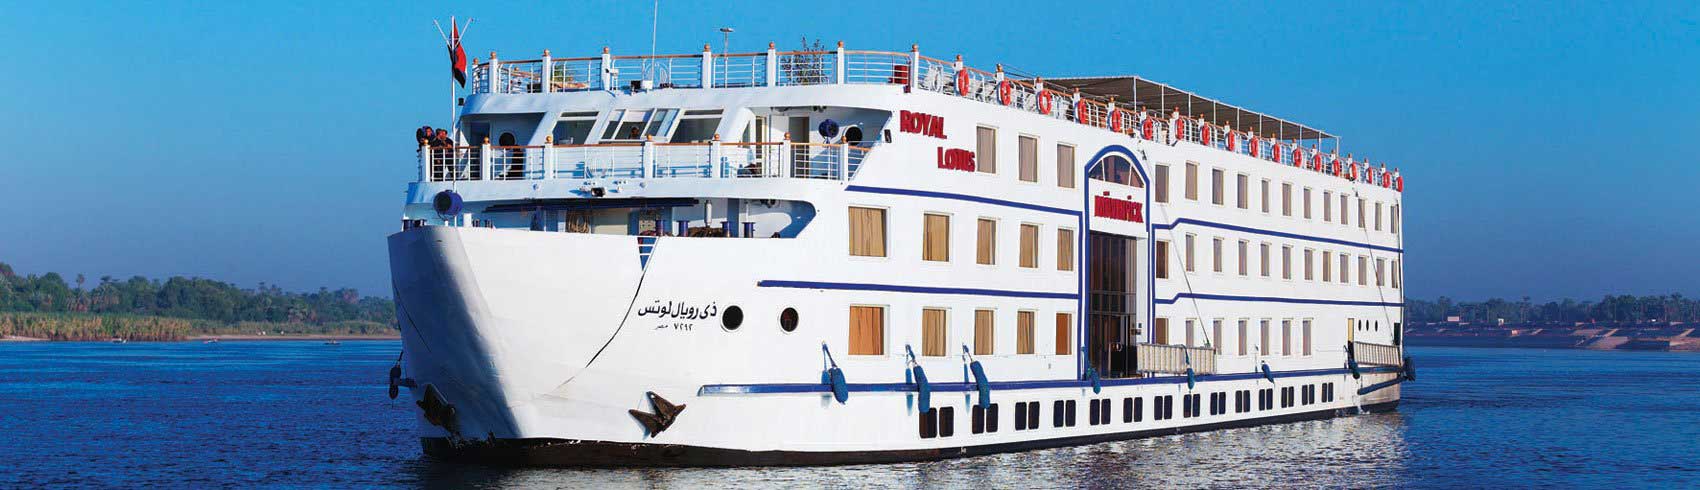 Crucero por el río Nilo